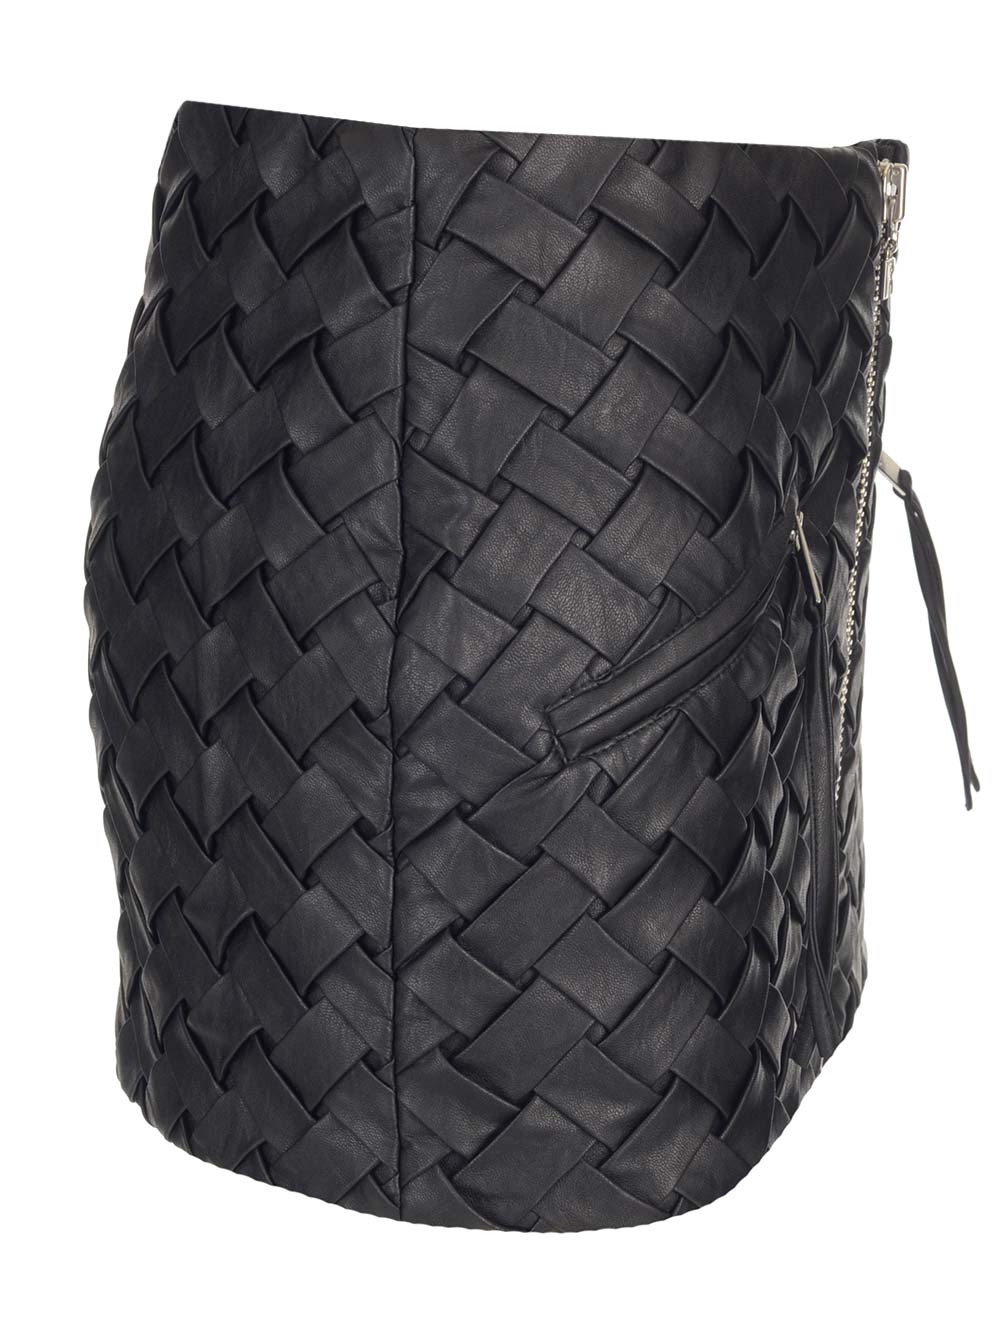 Shop Rotate Birger Christensen Black Woven Miniskirt